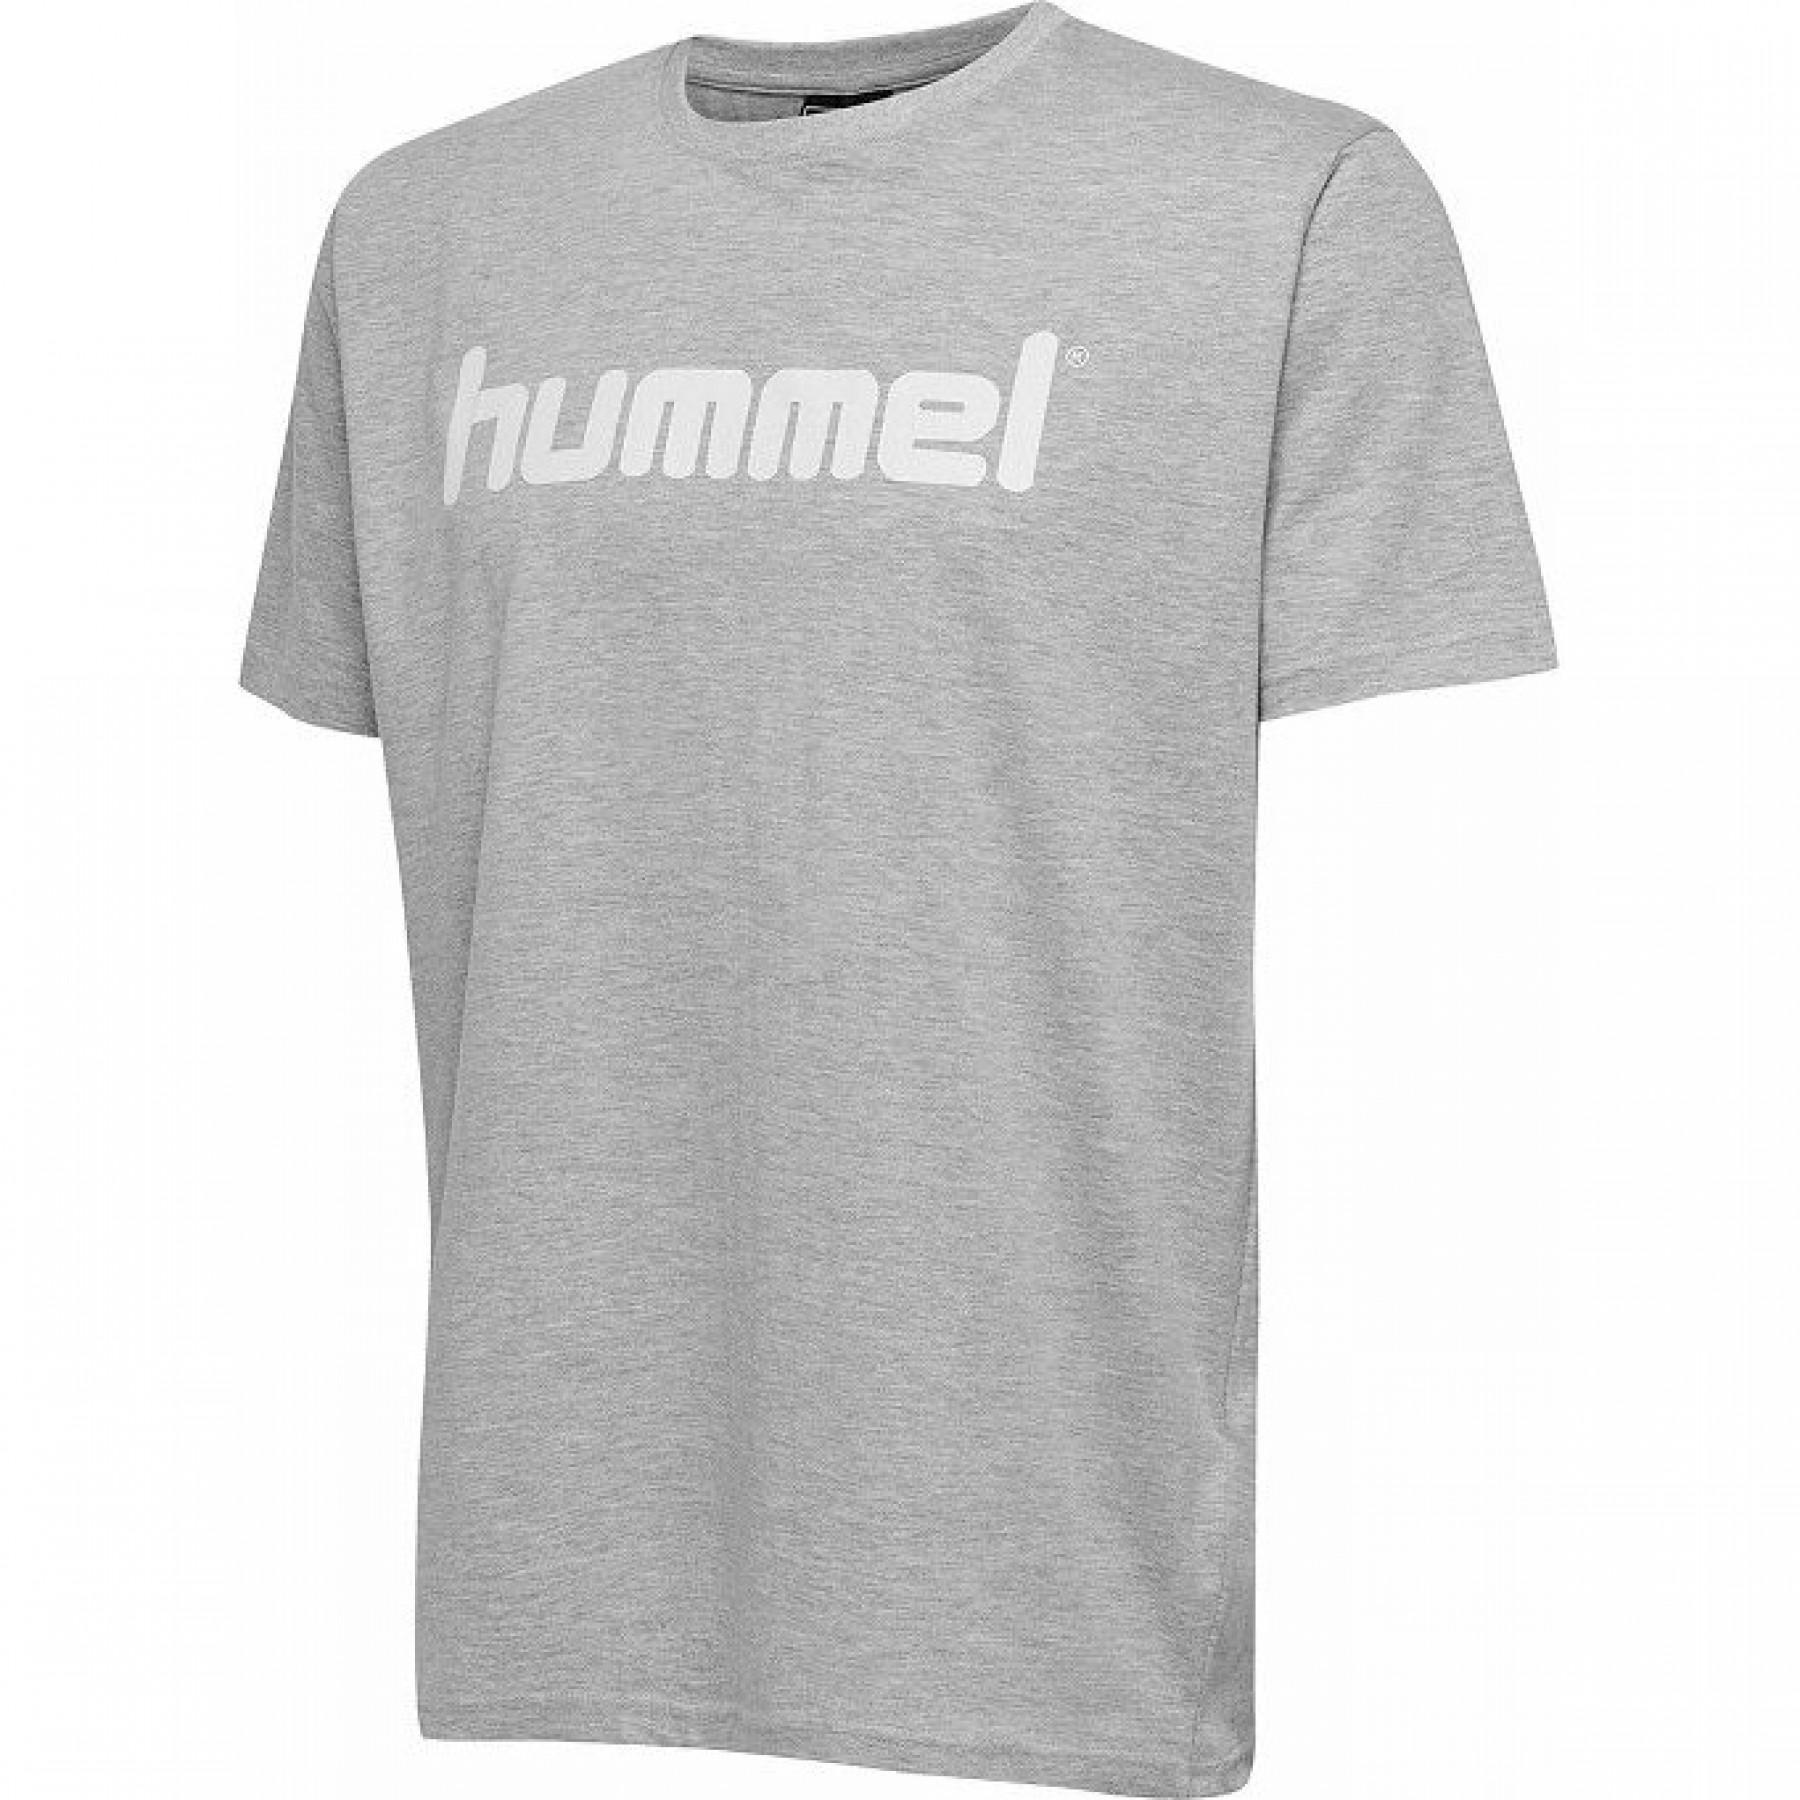 Maglietta per bambini Hummel hmlgo cotton logo